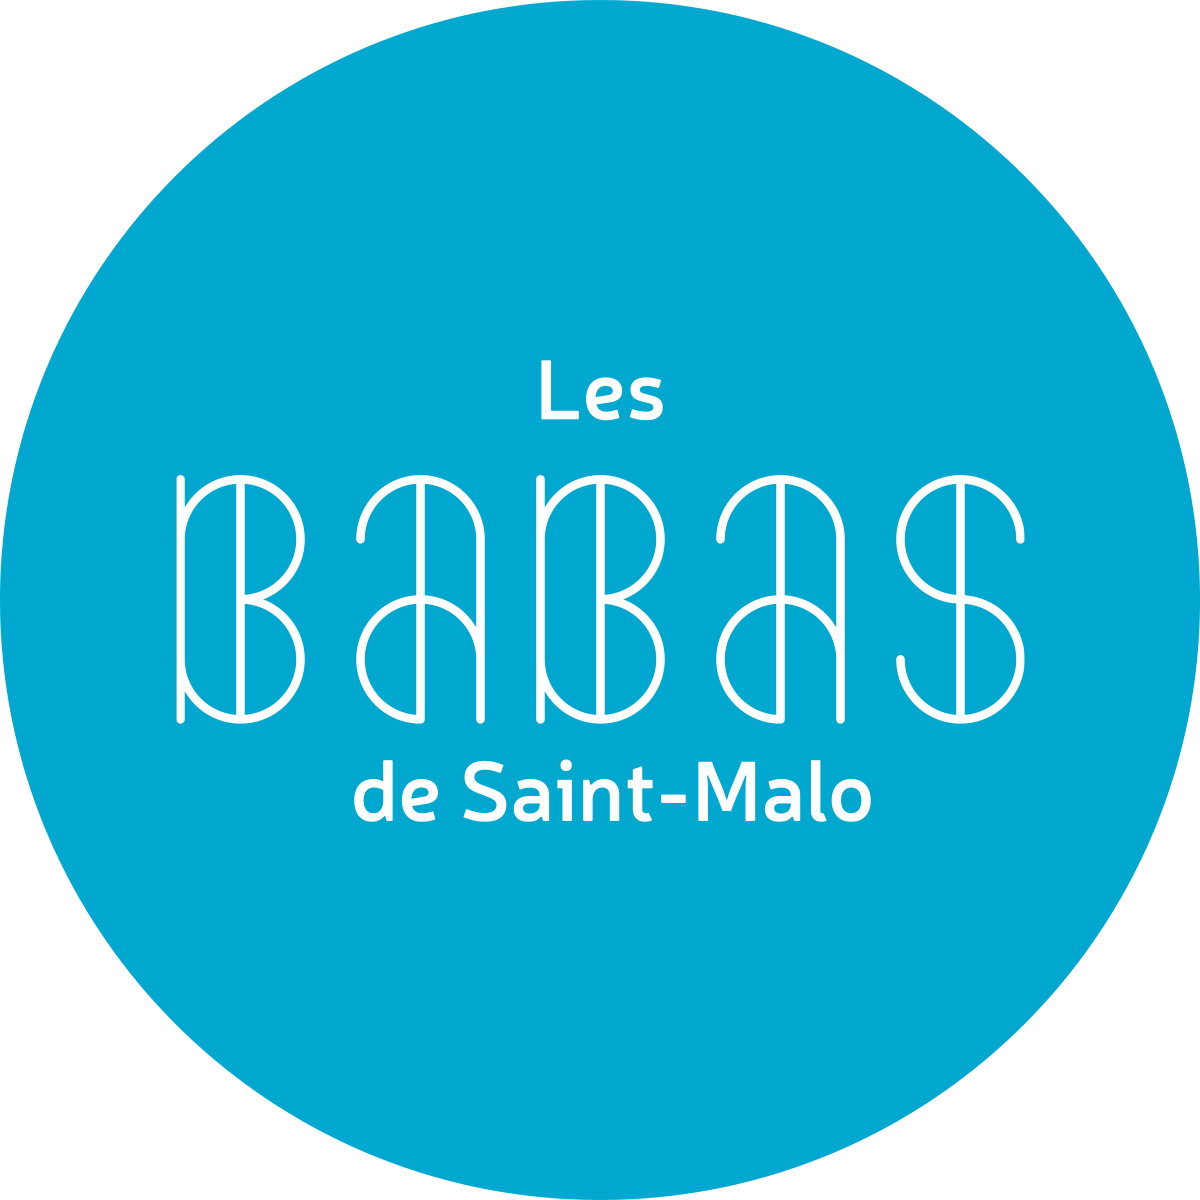 Les babas de Saint-Malo